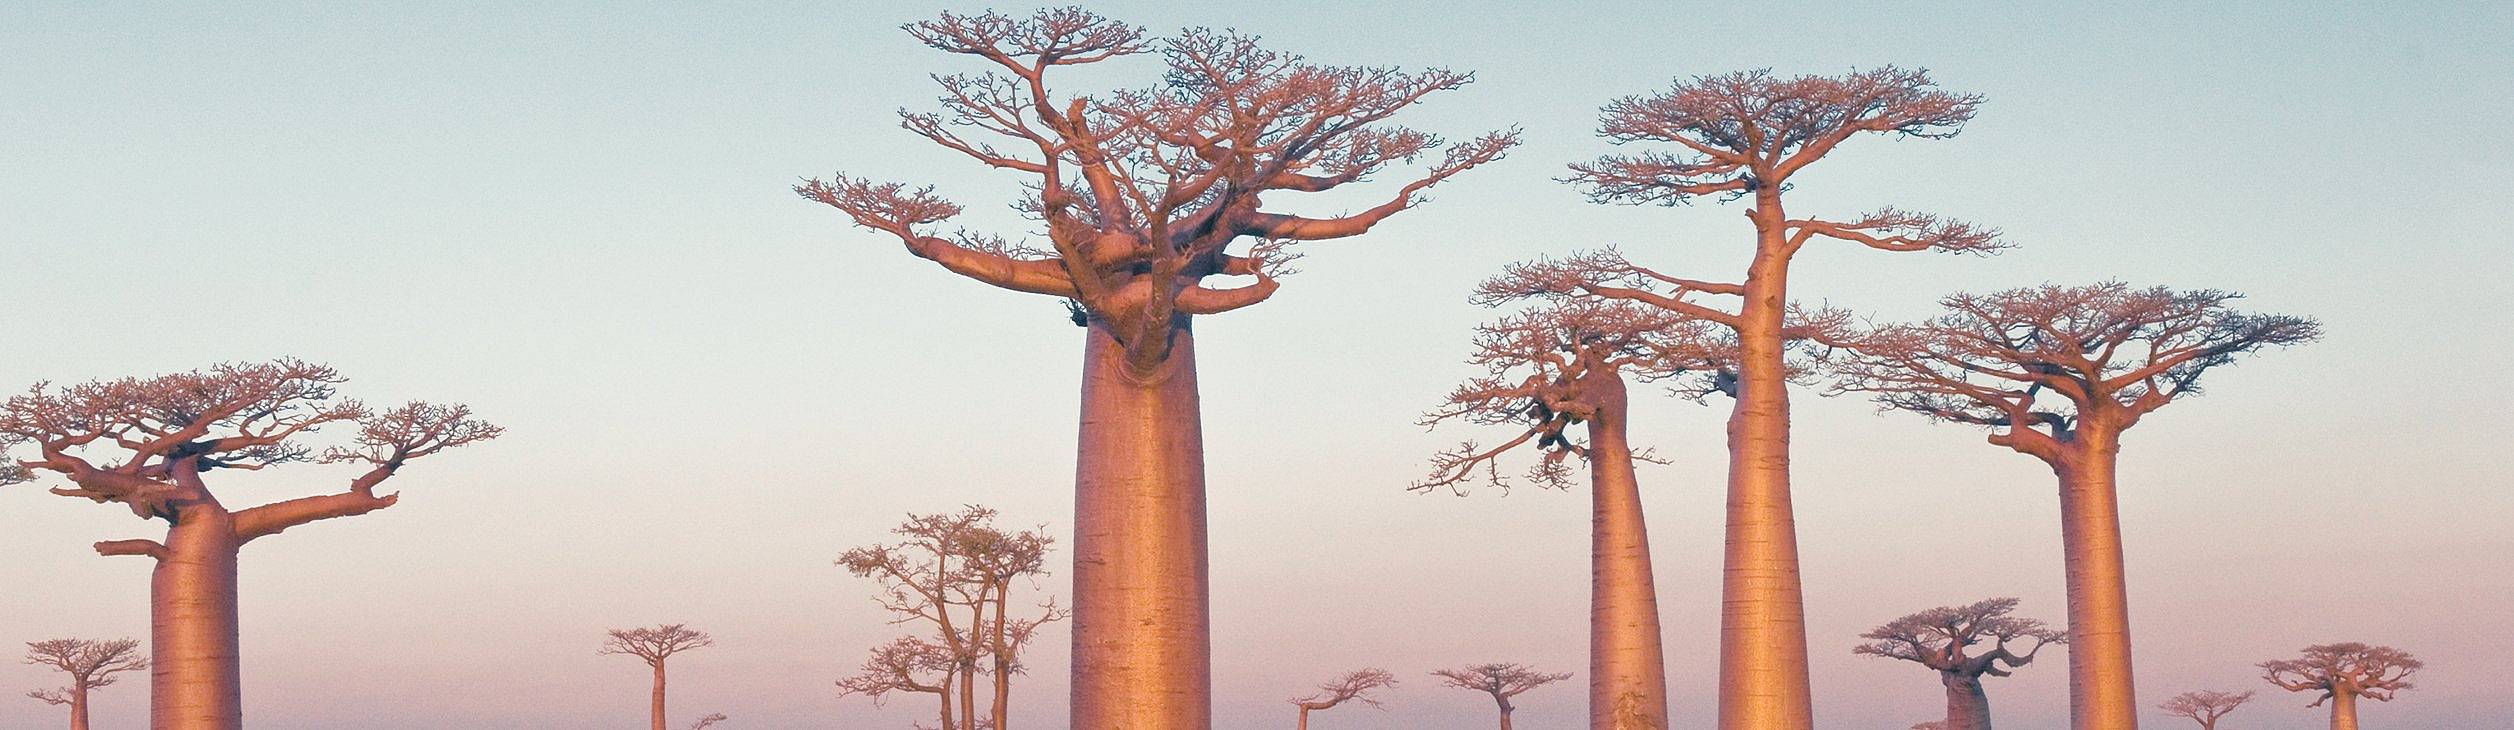 Gruppe von Baobabbäume, Madagaskar